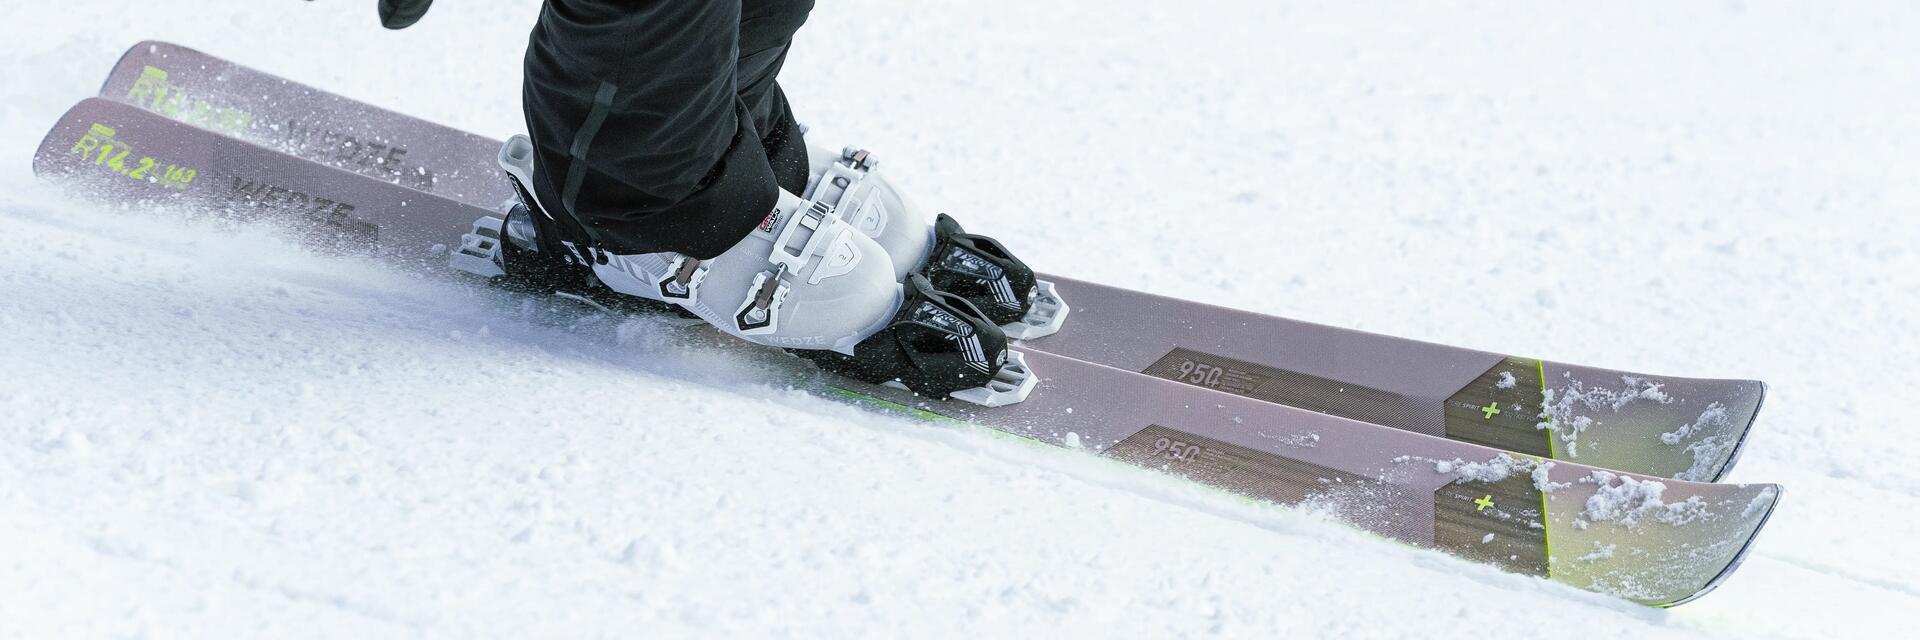 L'accessoire Decathlon pour ne pas avoir froid au ski 